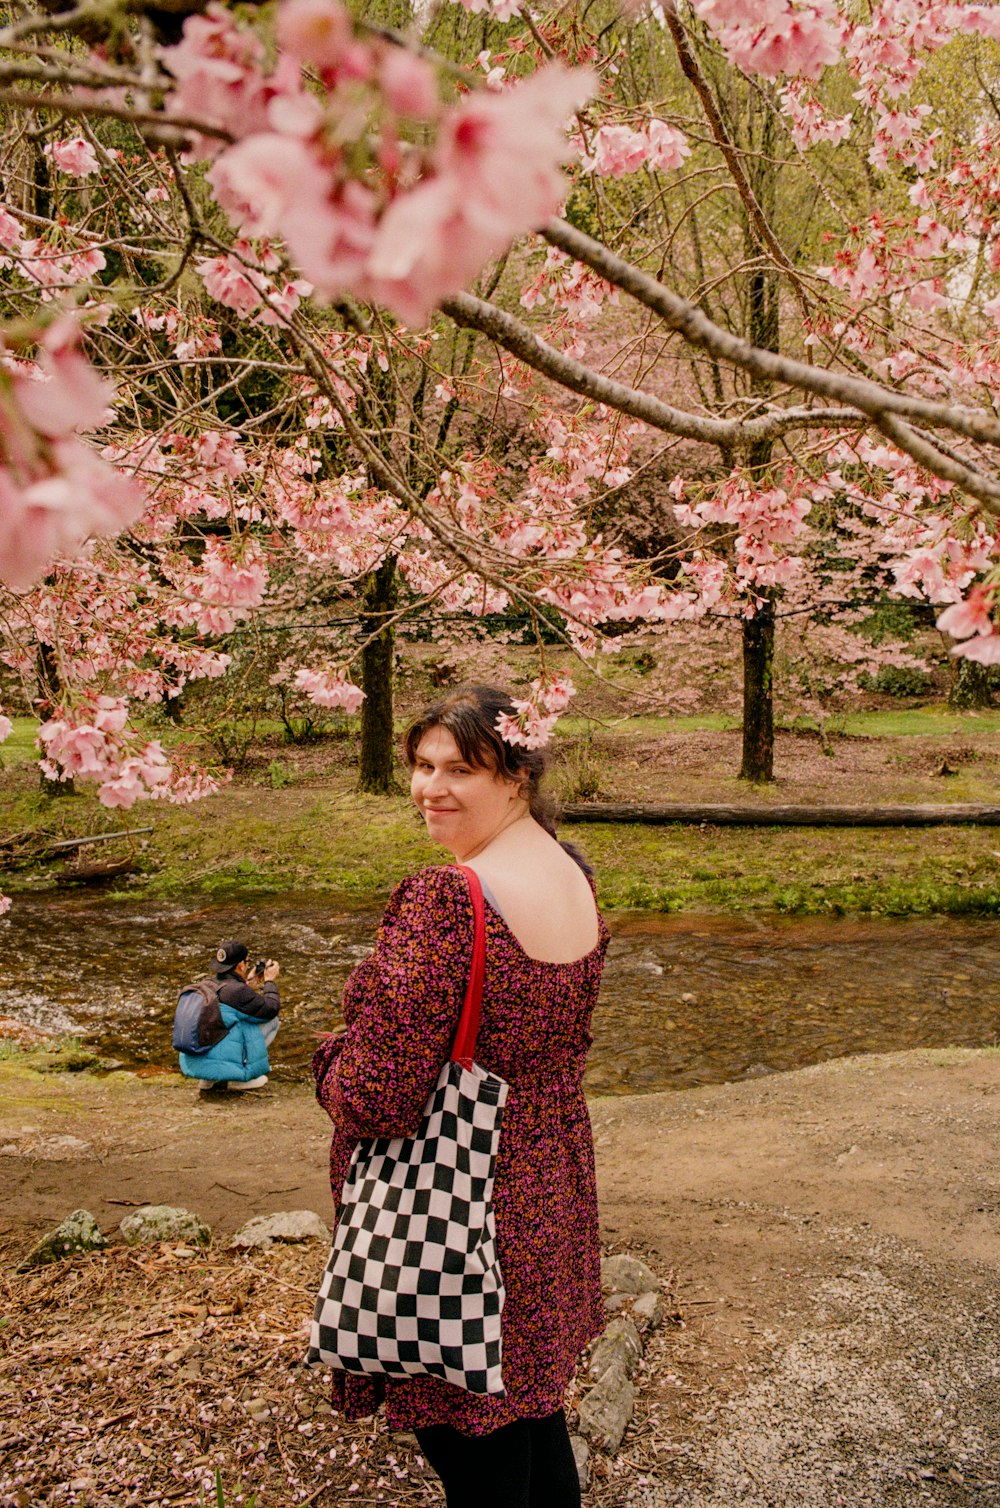 분홍색 꽃이 만발한 나무 아래 서 있는 여자